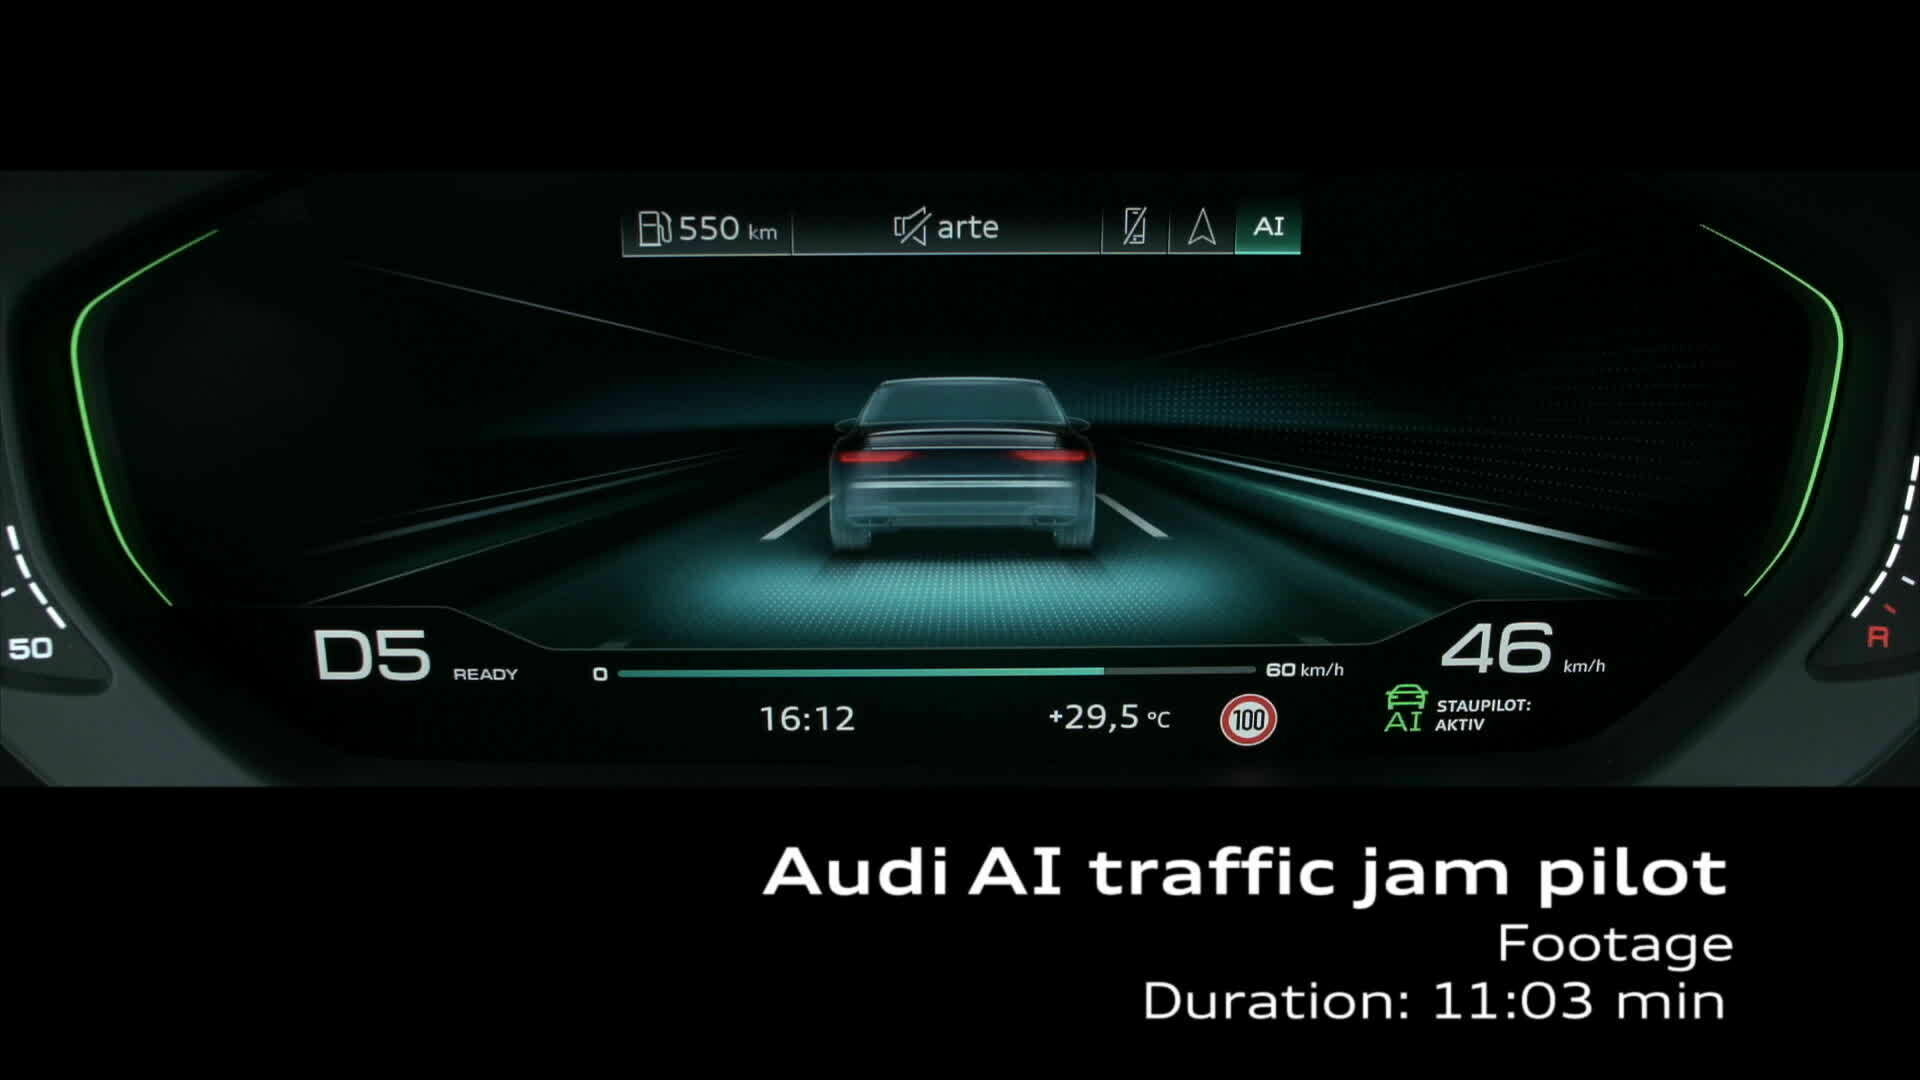 Footage Audi A8: Audi AI traffic jam pilot